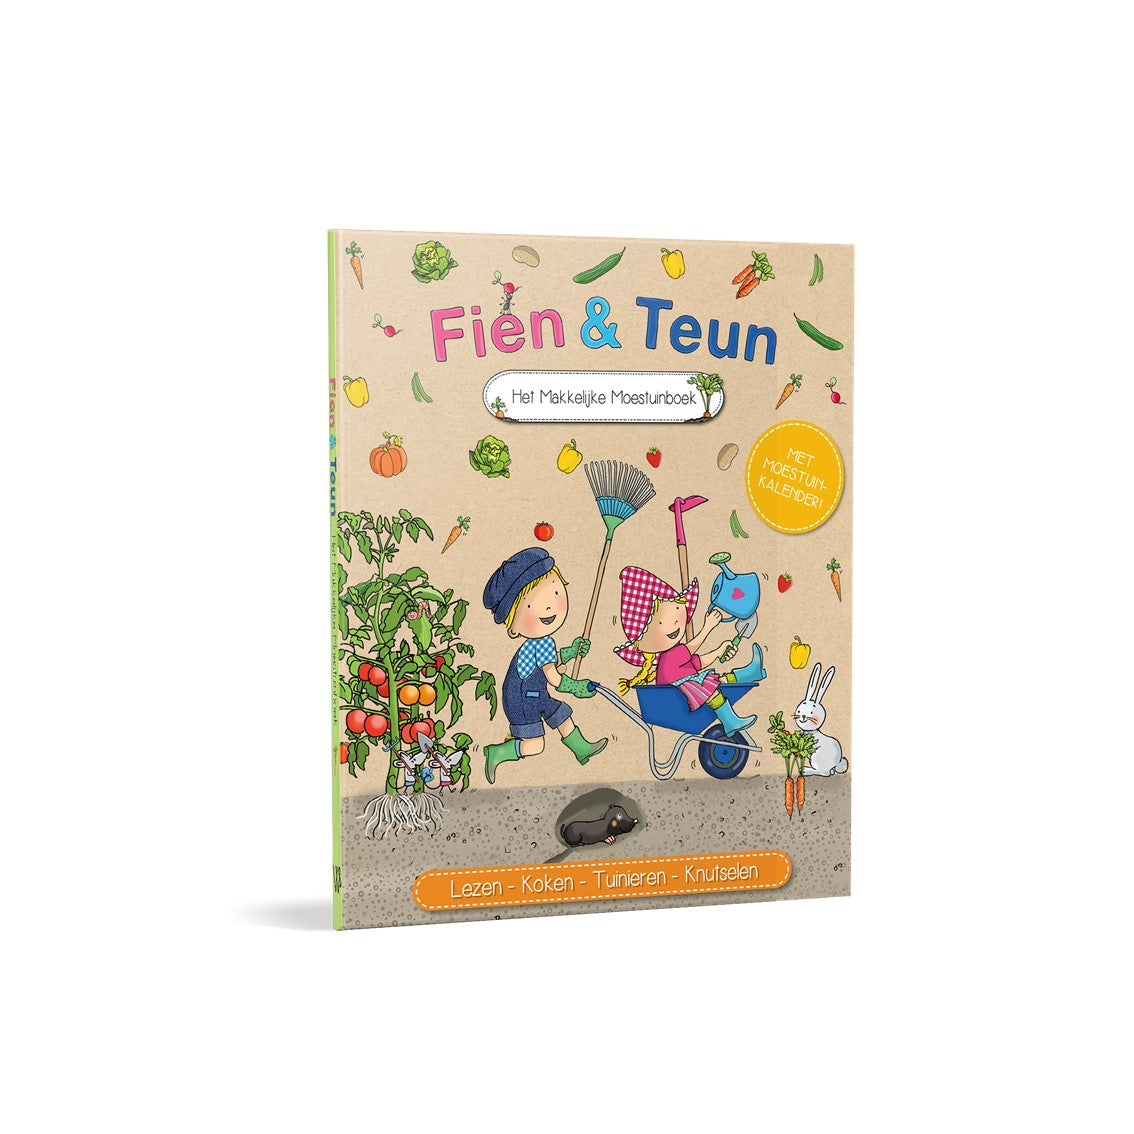 Fien & Teun - The easy vegetable garden book